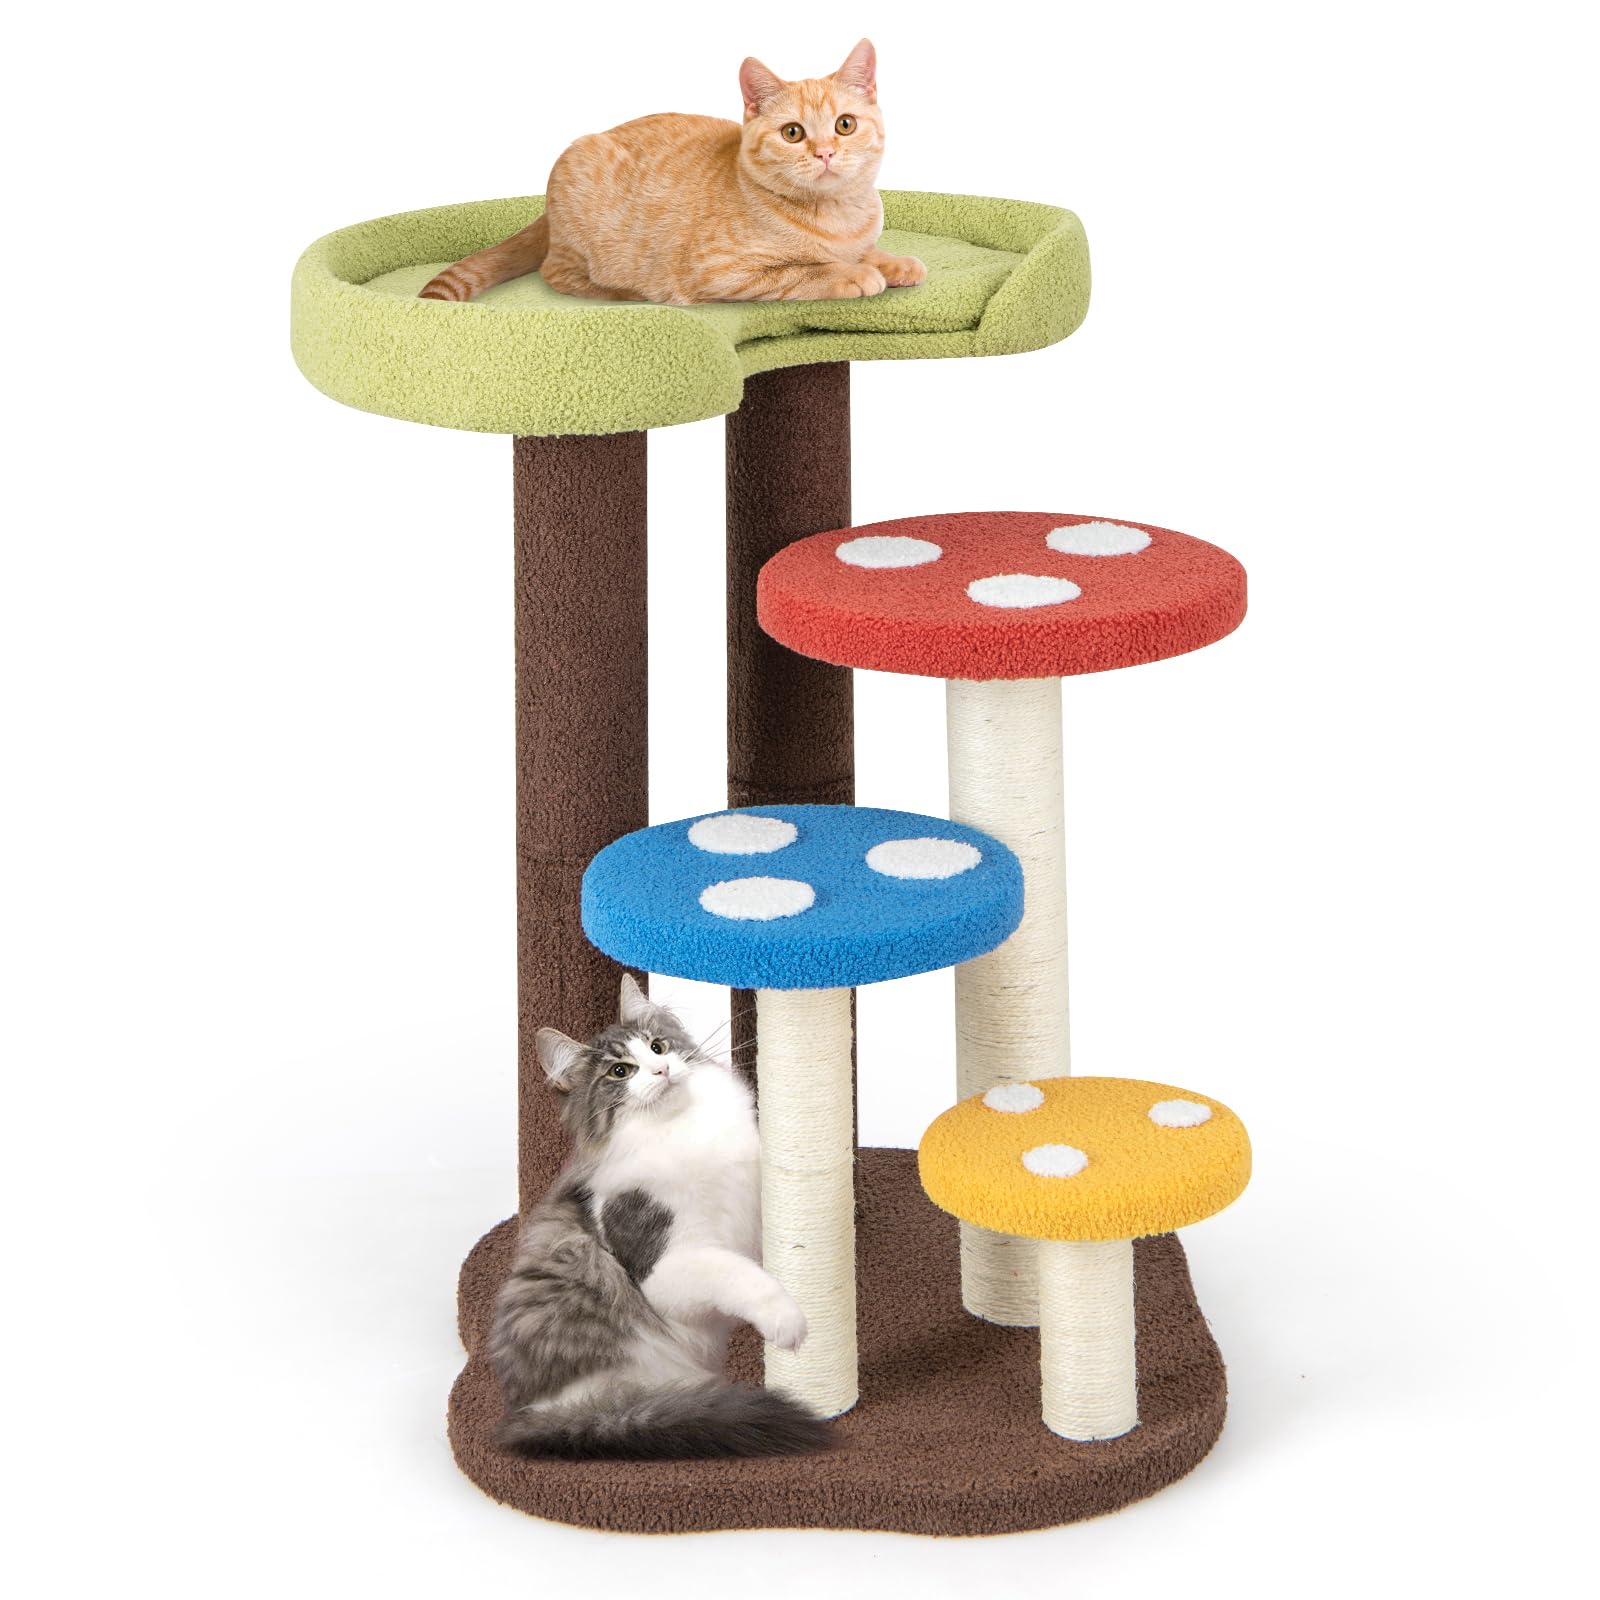 Giantex Cute Cat Tree - 37 Inches Mushroom Cat Tower